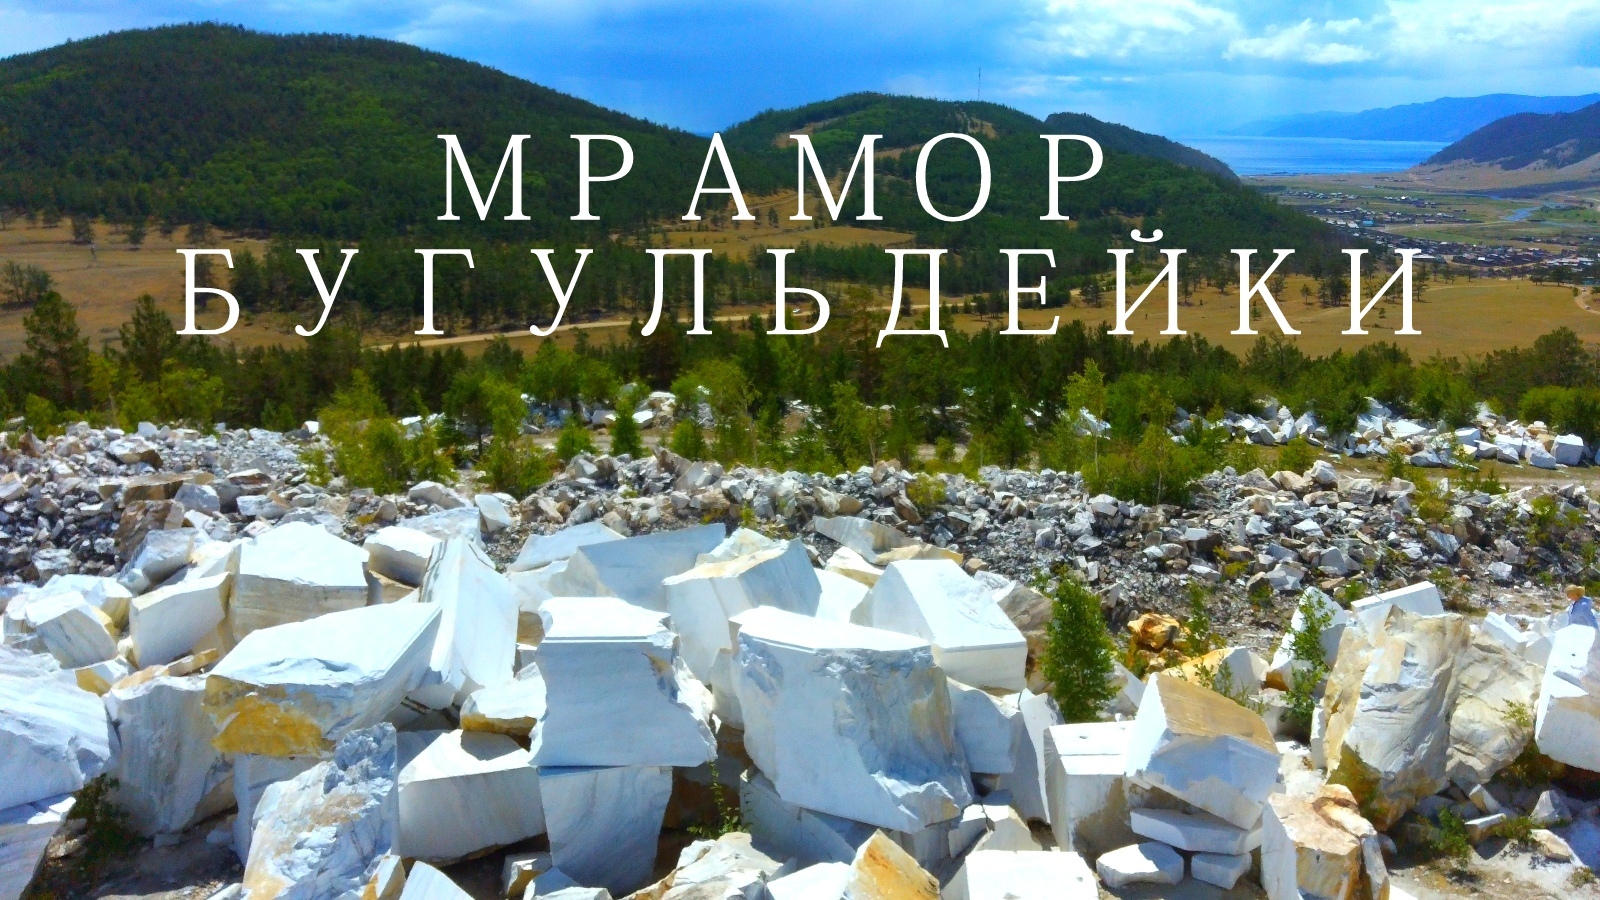 Мраморный карьер на Байкале .Мишкина гора в Бугульдейке. 